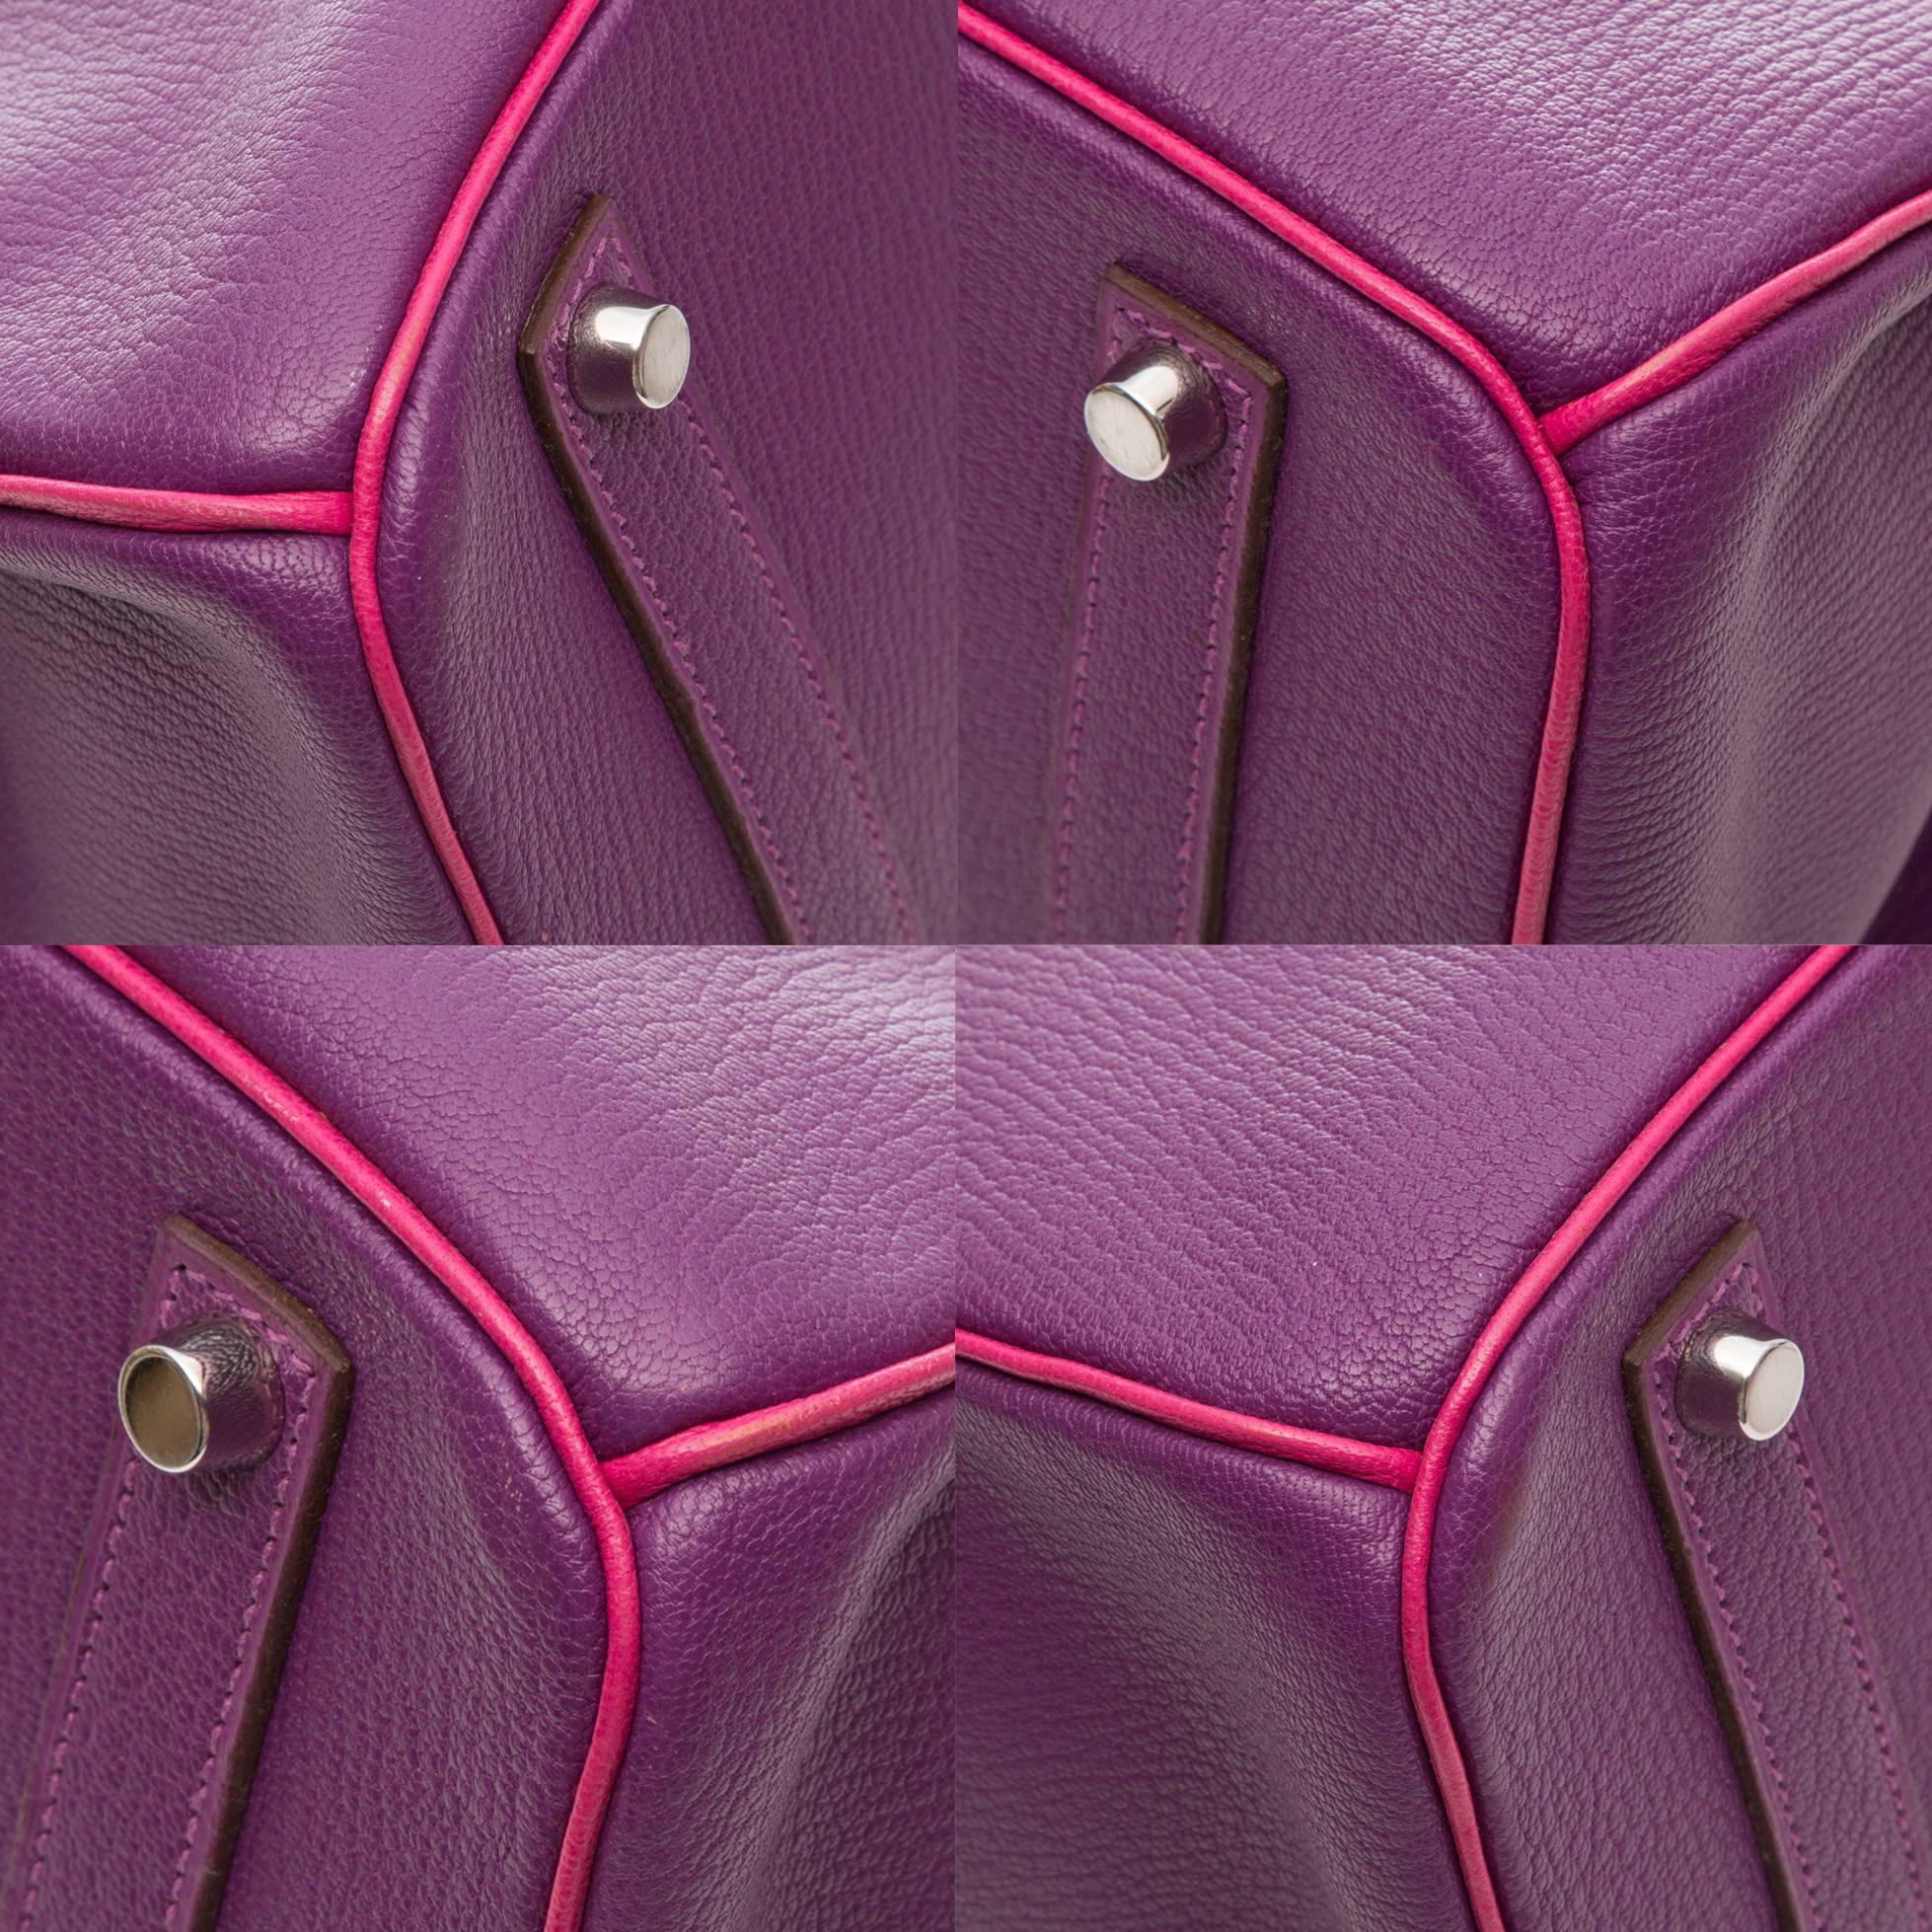 Hermes Special Order Bi-colour Togo Leather 35cm Birkin Bag 2